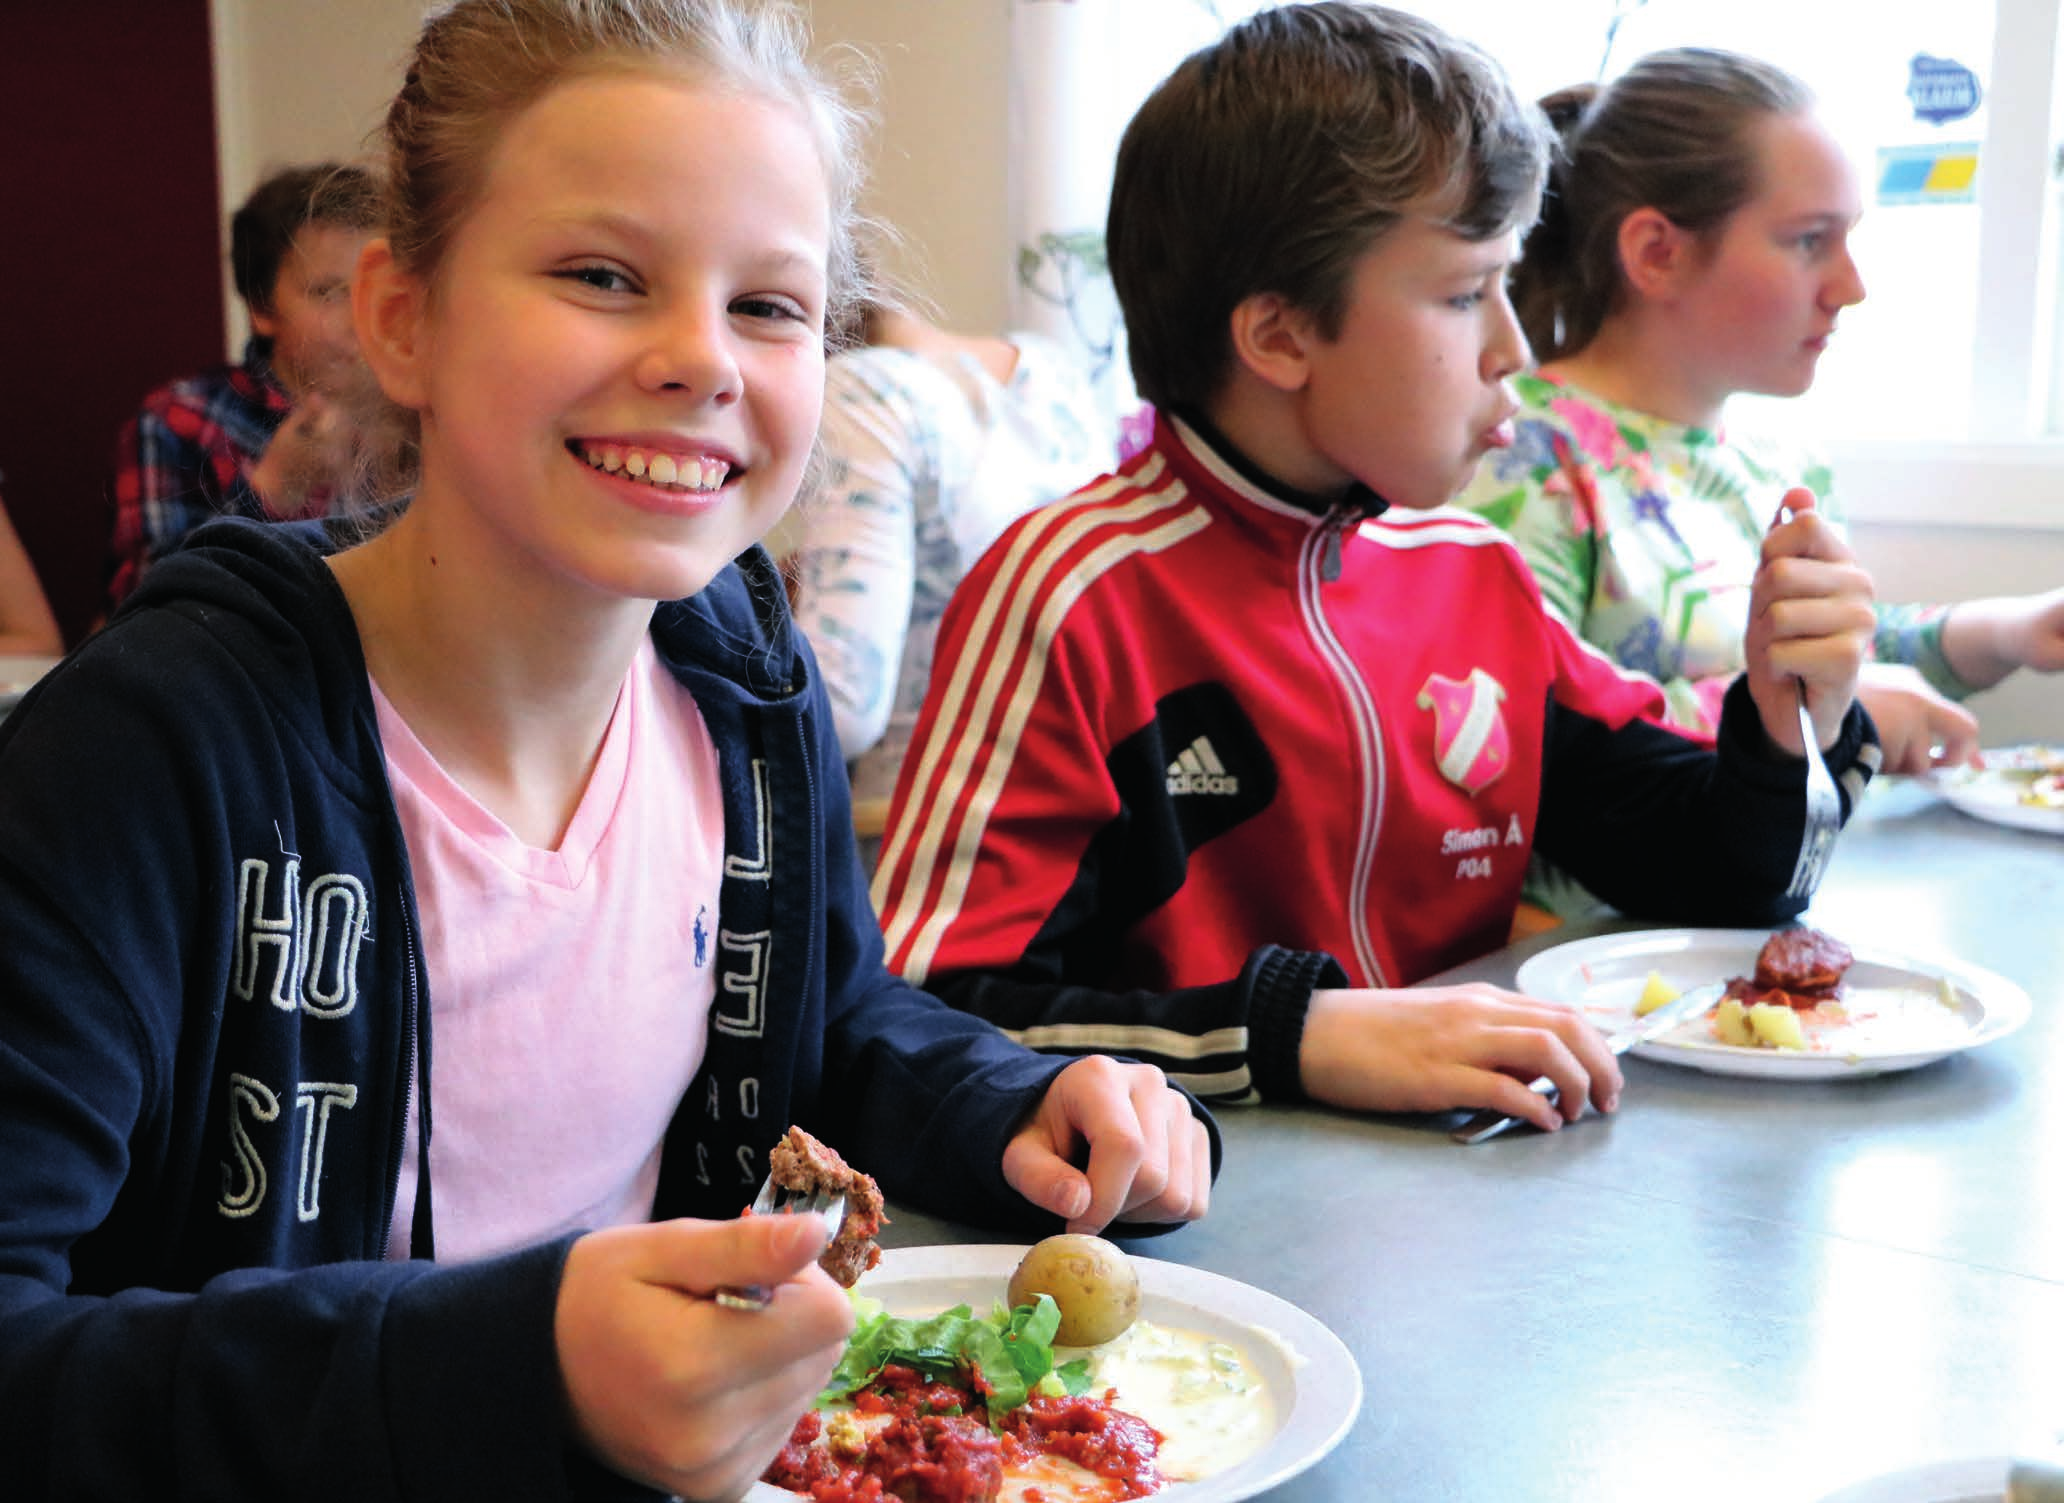 Foto: Maria Nilsson/Regeringskansliet På Fornuddens skola i Tyresö kommun, får barnen skollunch utöver det vanliga. Mycket vegetariskt, ekologiskt och närproducerat. Men framför allt matglädje!